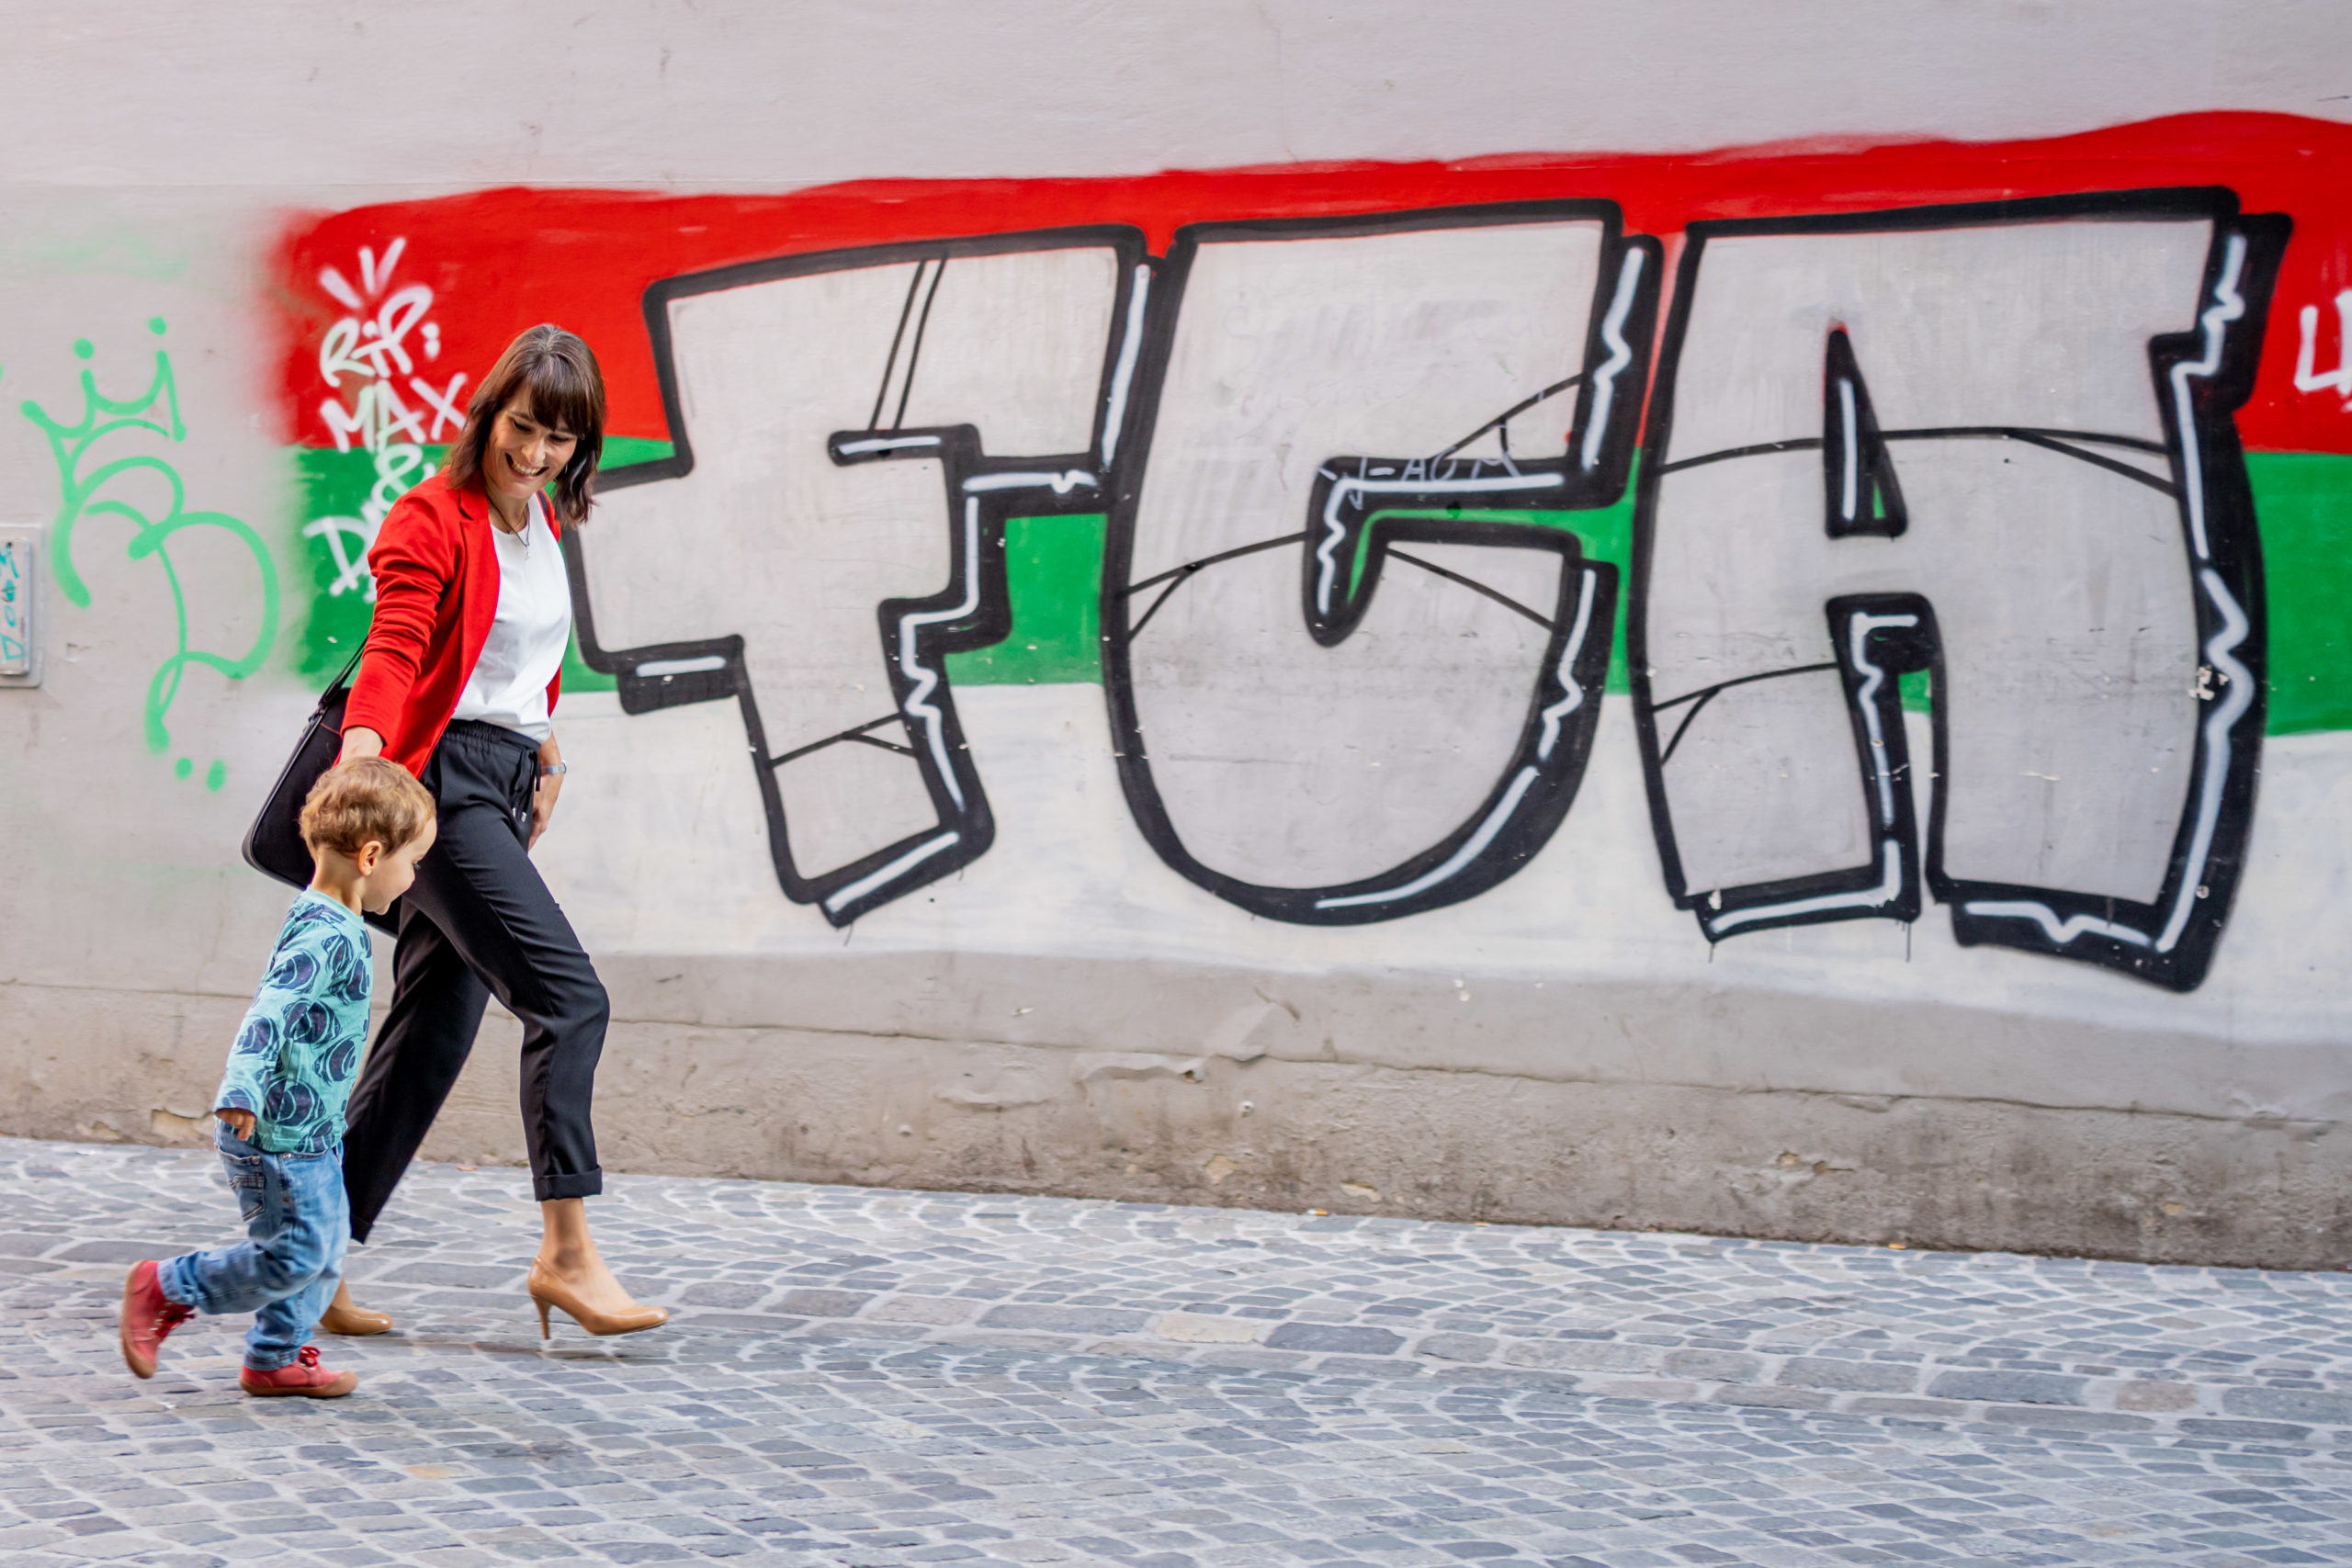 Spaziergehende vor FCA Graffiti in der Innenstadt Augsburg